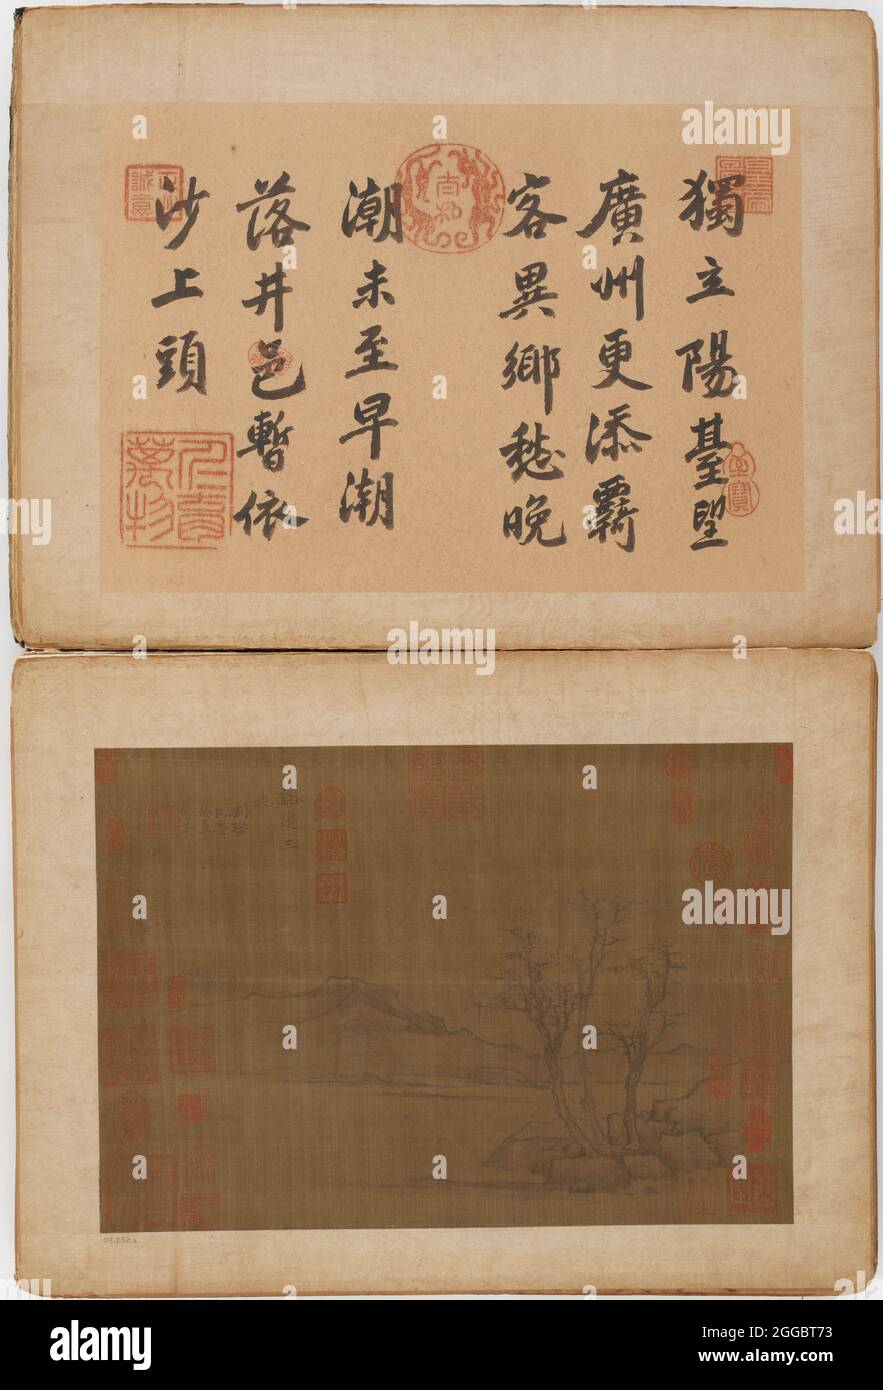 Vierundzwanzig Landschaften, möglicherweise Ming-Dynastie, 1368-1644. Früher Ni Zan zugeschrieben. Stockfoto